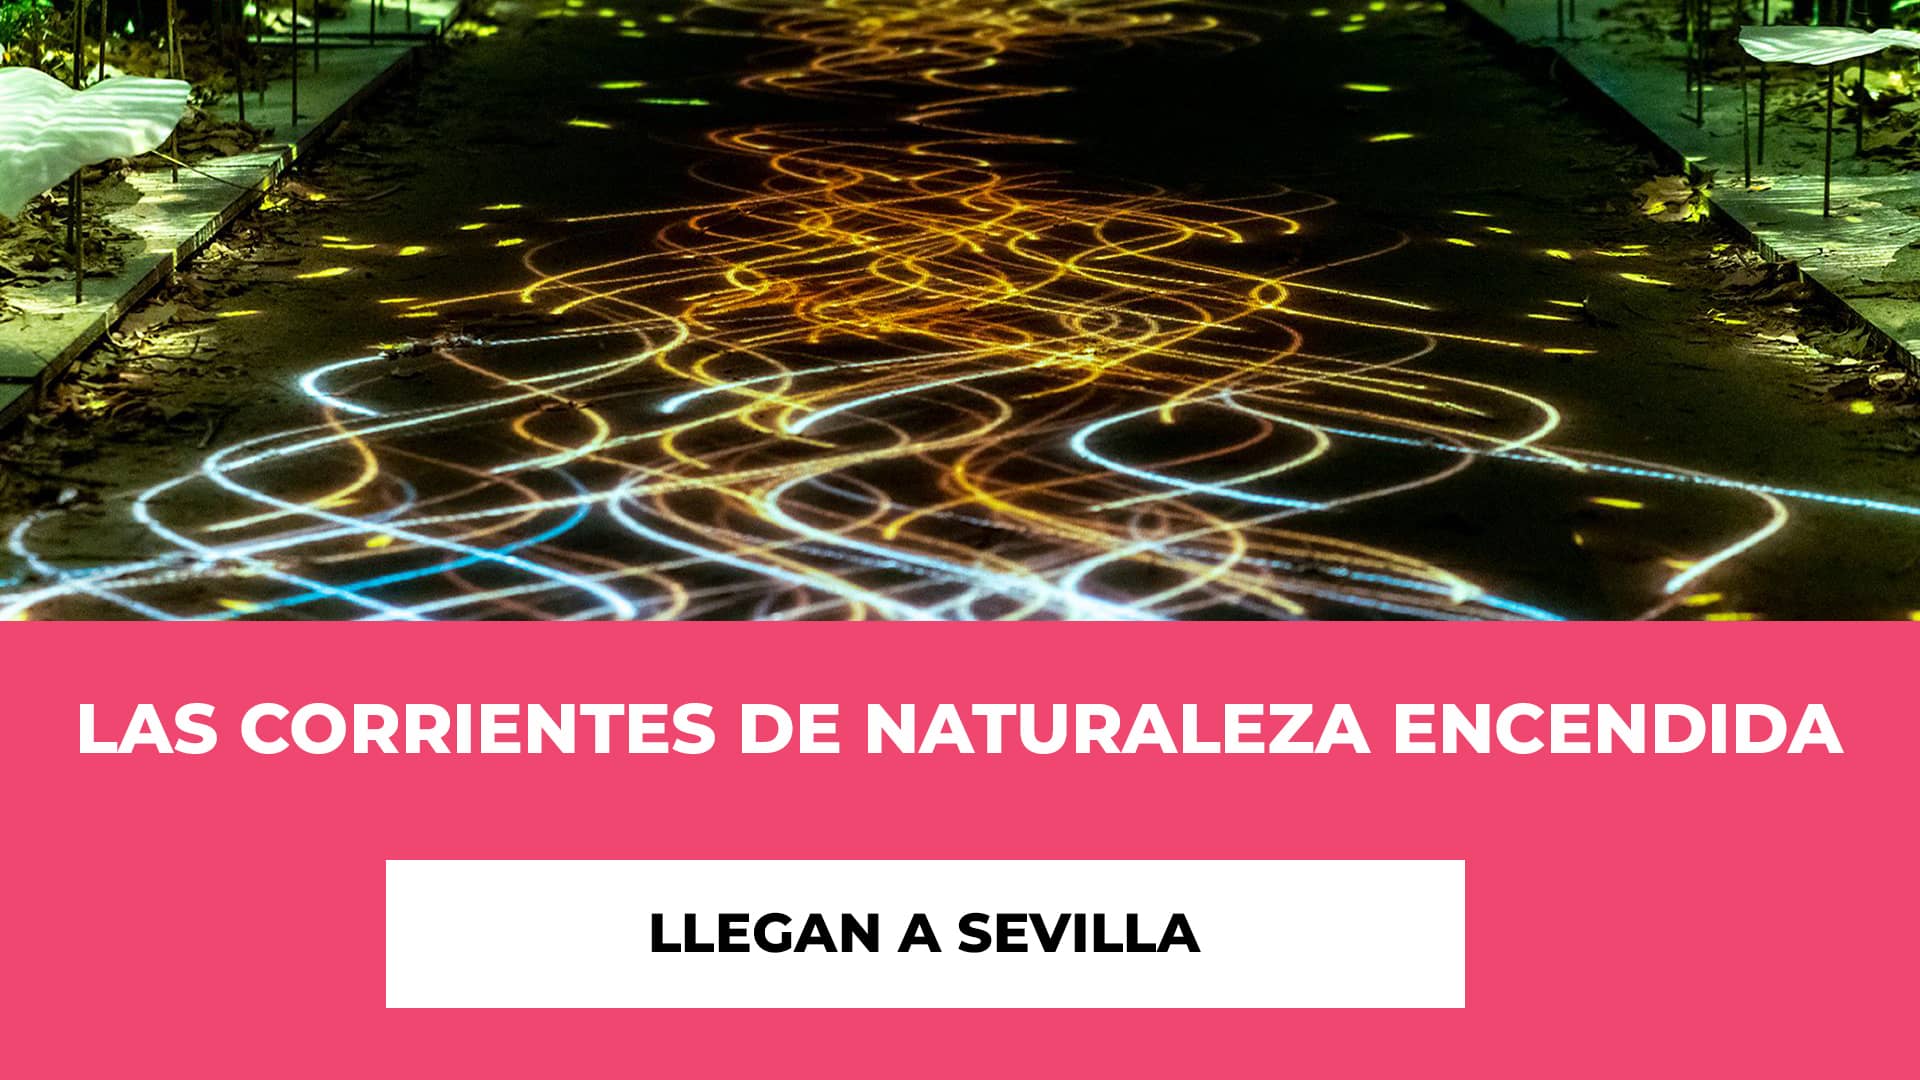 Las Corrientes de Naturaleza Encendida llegan a Sevilla - Horario - Fechas - Ubicación - Precios de las entradas - Información Práctica